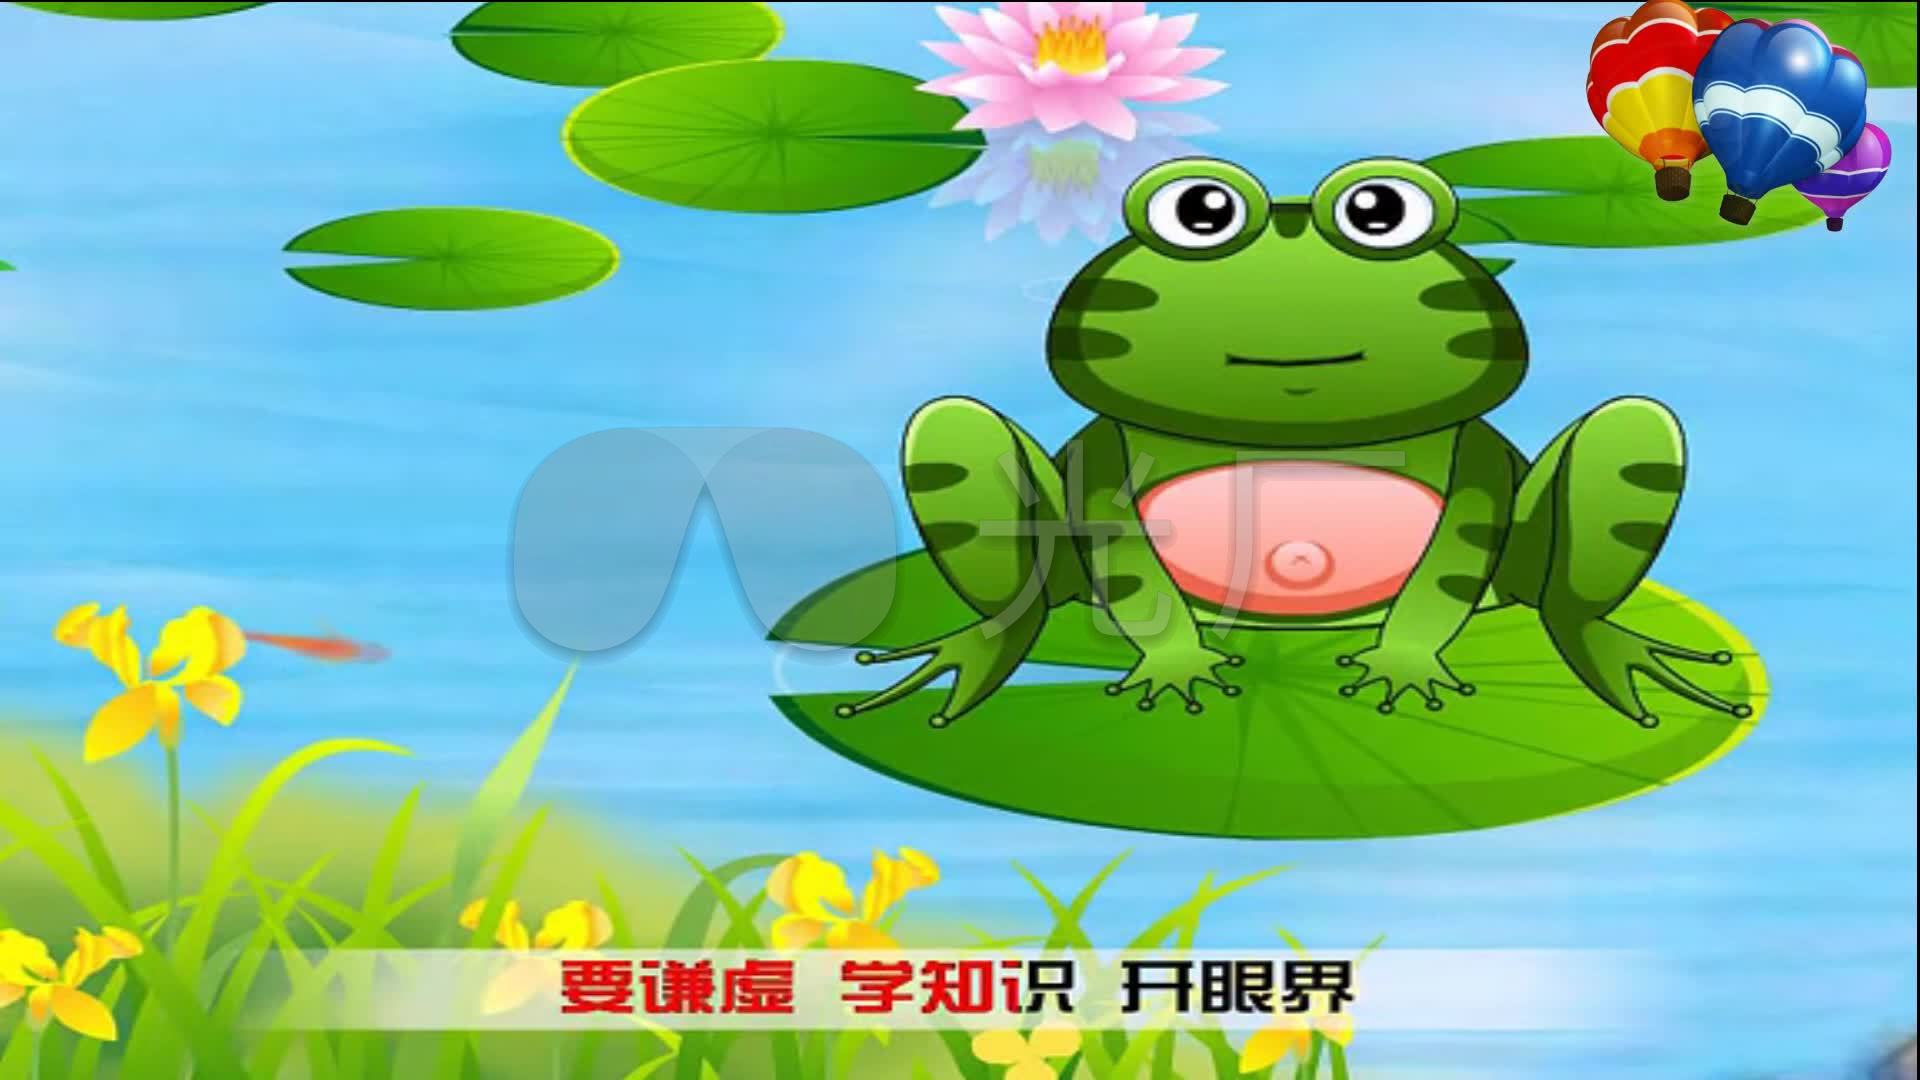 井底之蛙动漫动画儿歌_1920X1080_高清视频